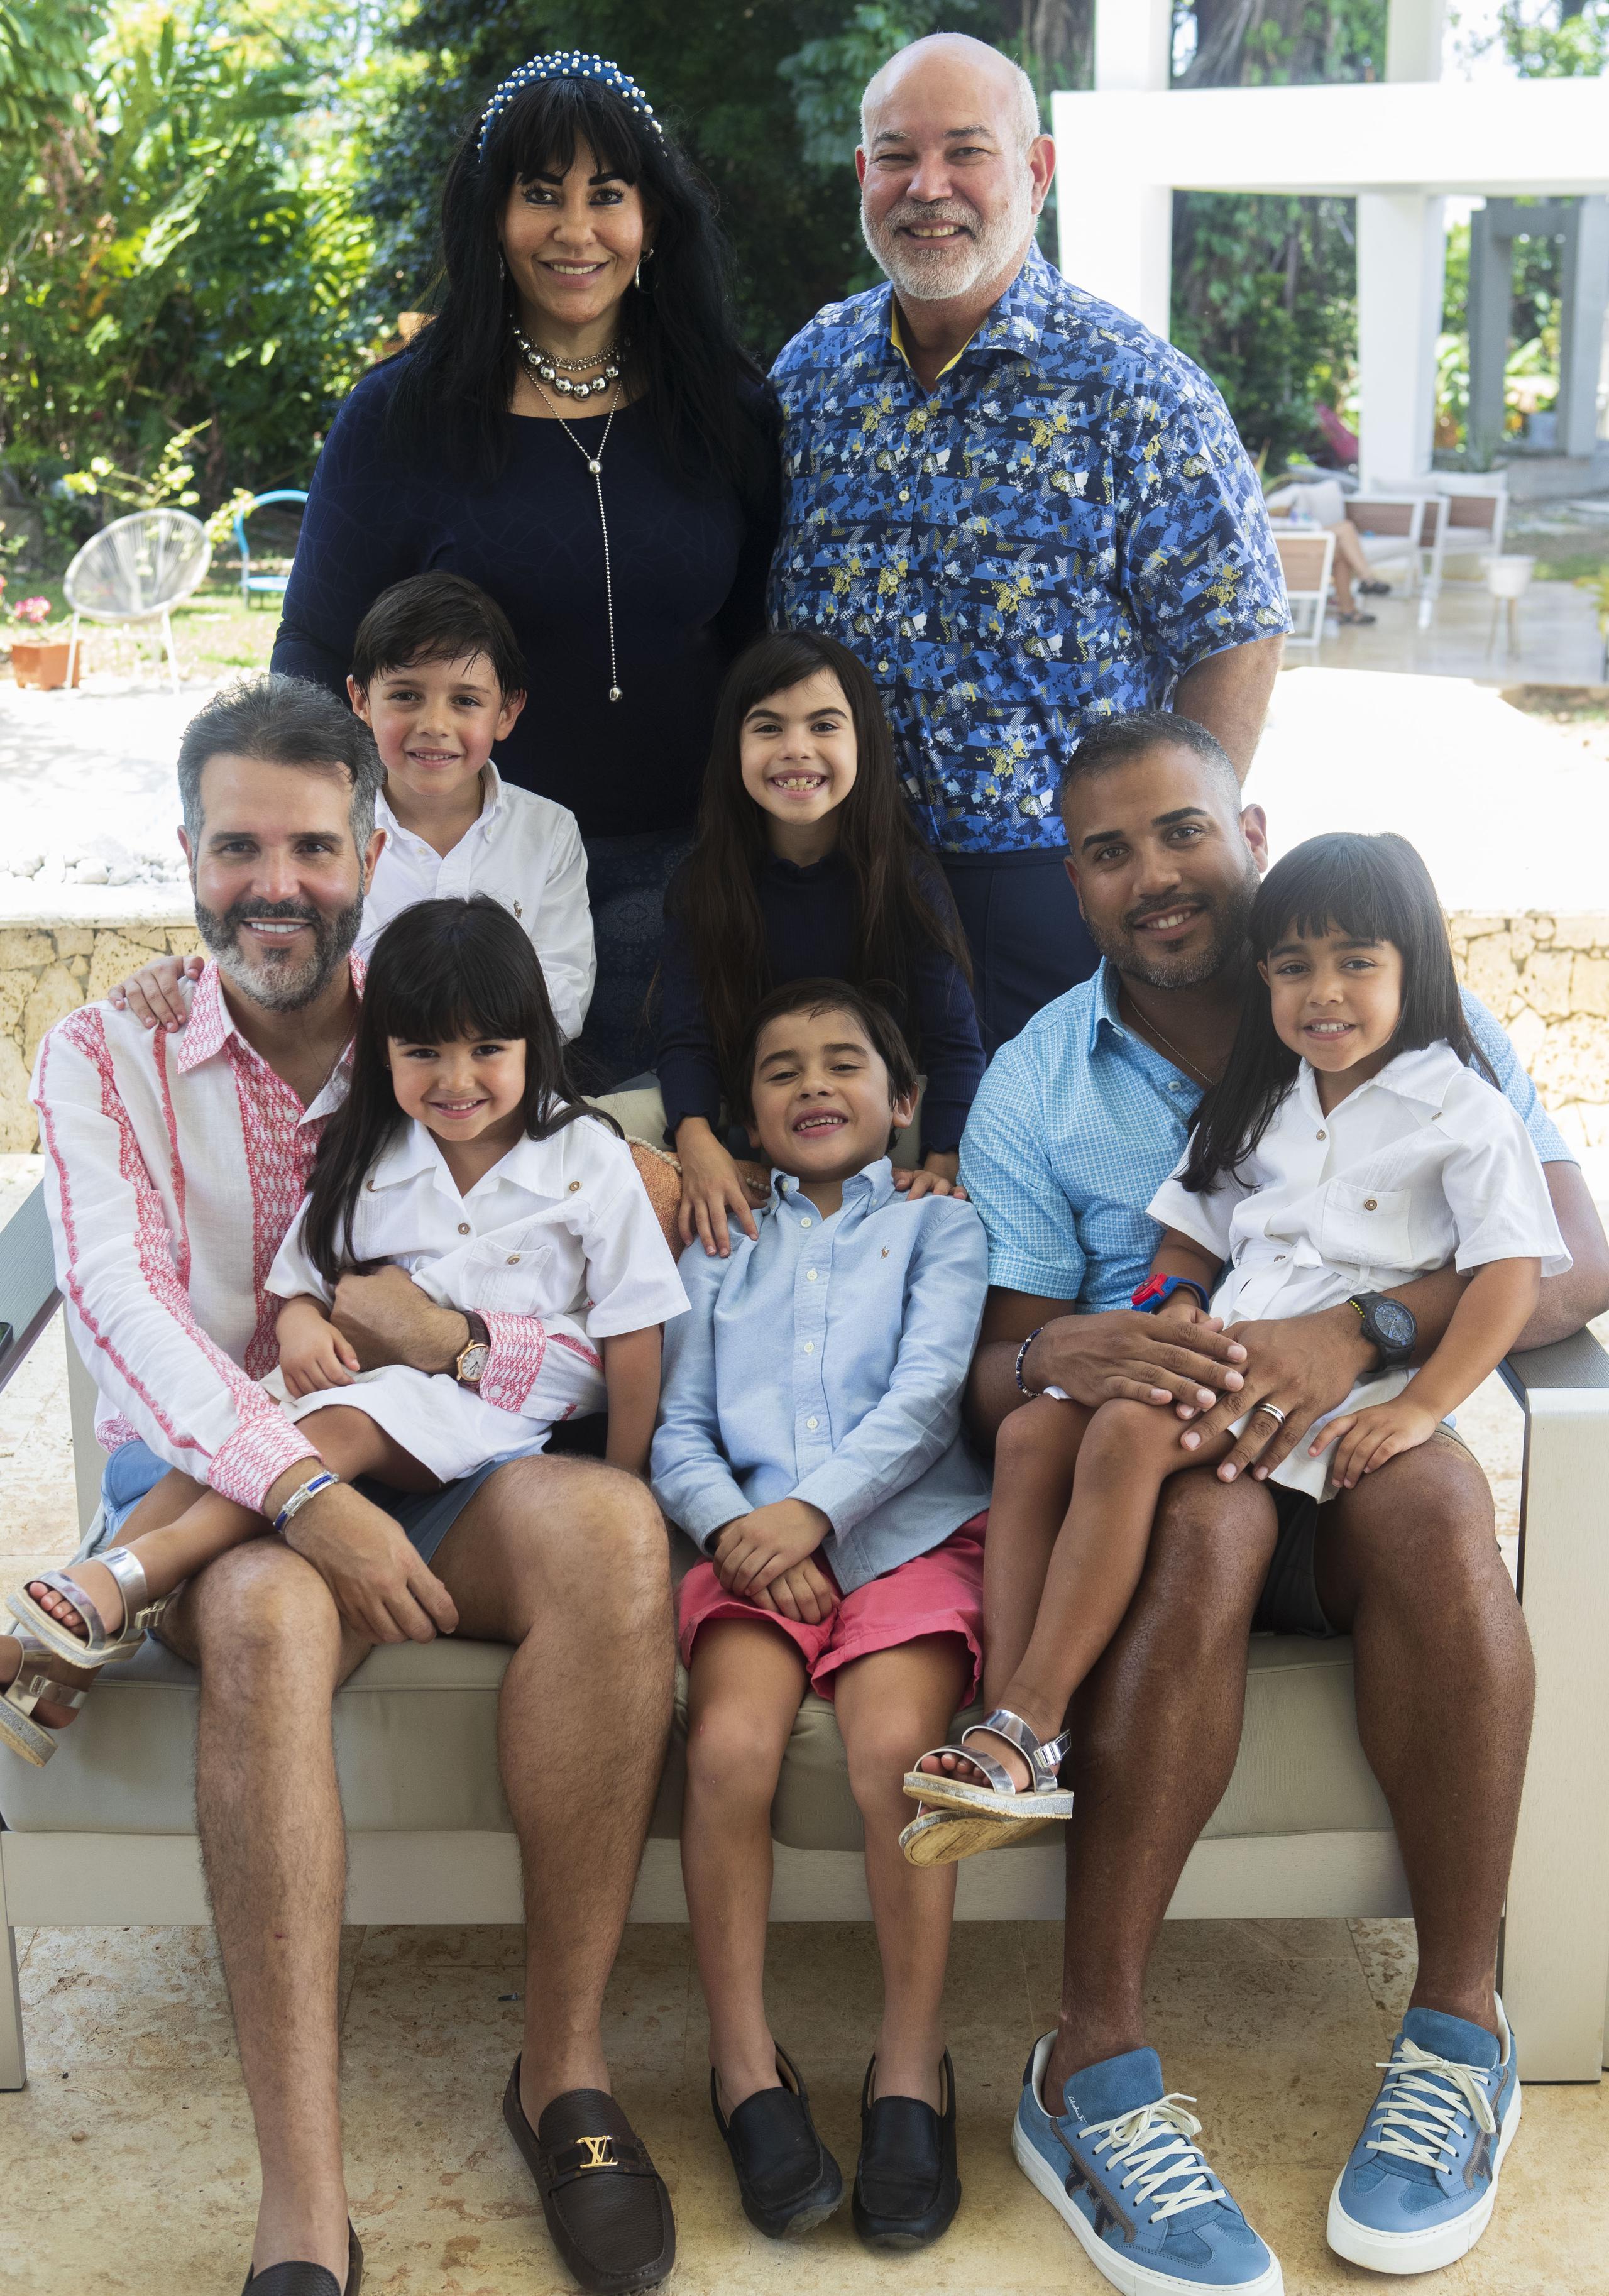 La familia Rivera Gómez recibe el apoyo incondicional del legislador Johnny Méndez y su esposa Lisandra, quienes adoptaron a Alysha, hermana mayor de los demás niños.